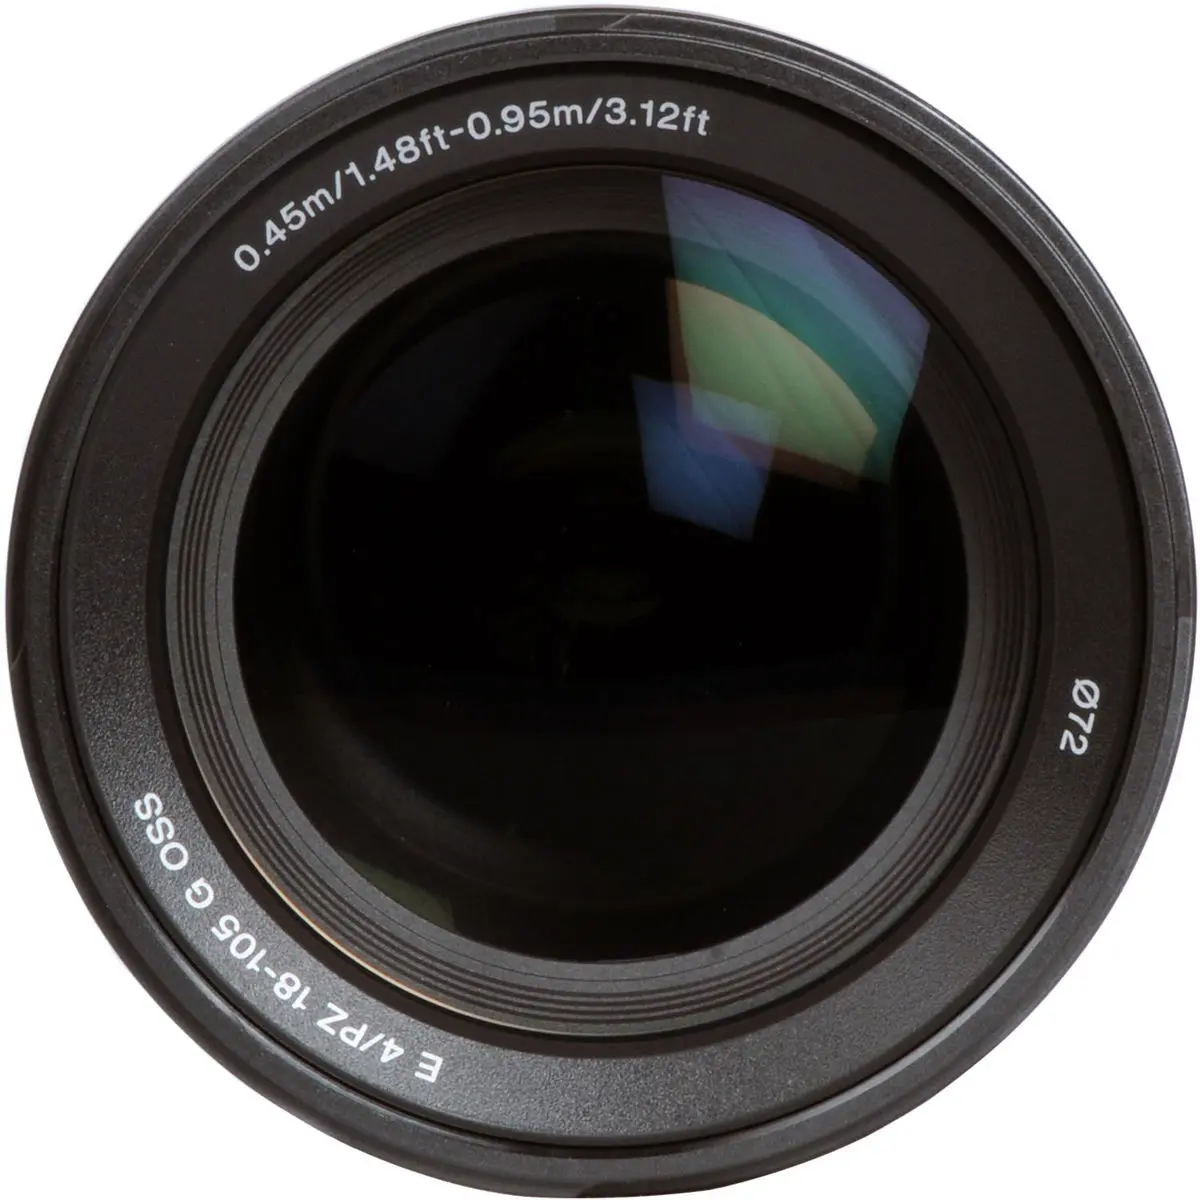 4. Sony E PZ 18-105mm F4 G OSS Lens SELP18105G E-Mount APS-C Format